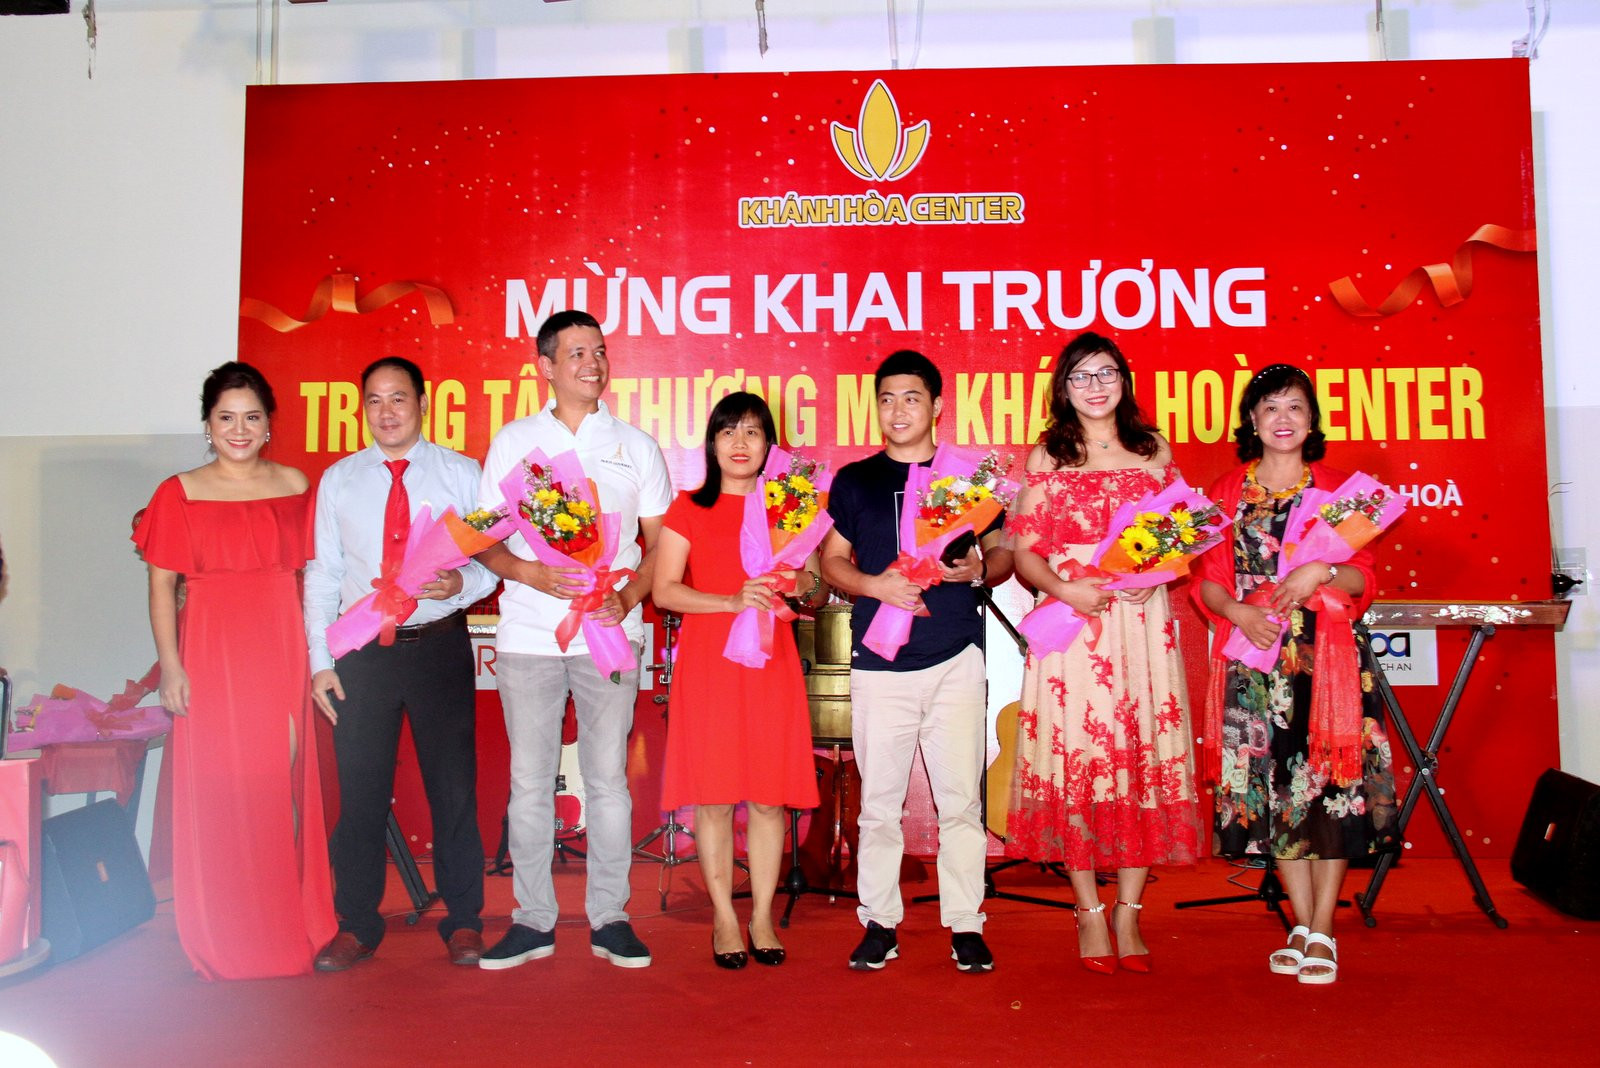 Đại diện công ty TNHH Hoàng Kim tặng hoa cho các đối tác nhân dịp khai trương Trung tâm thương mại Khánh Hòa Center